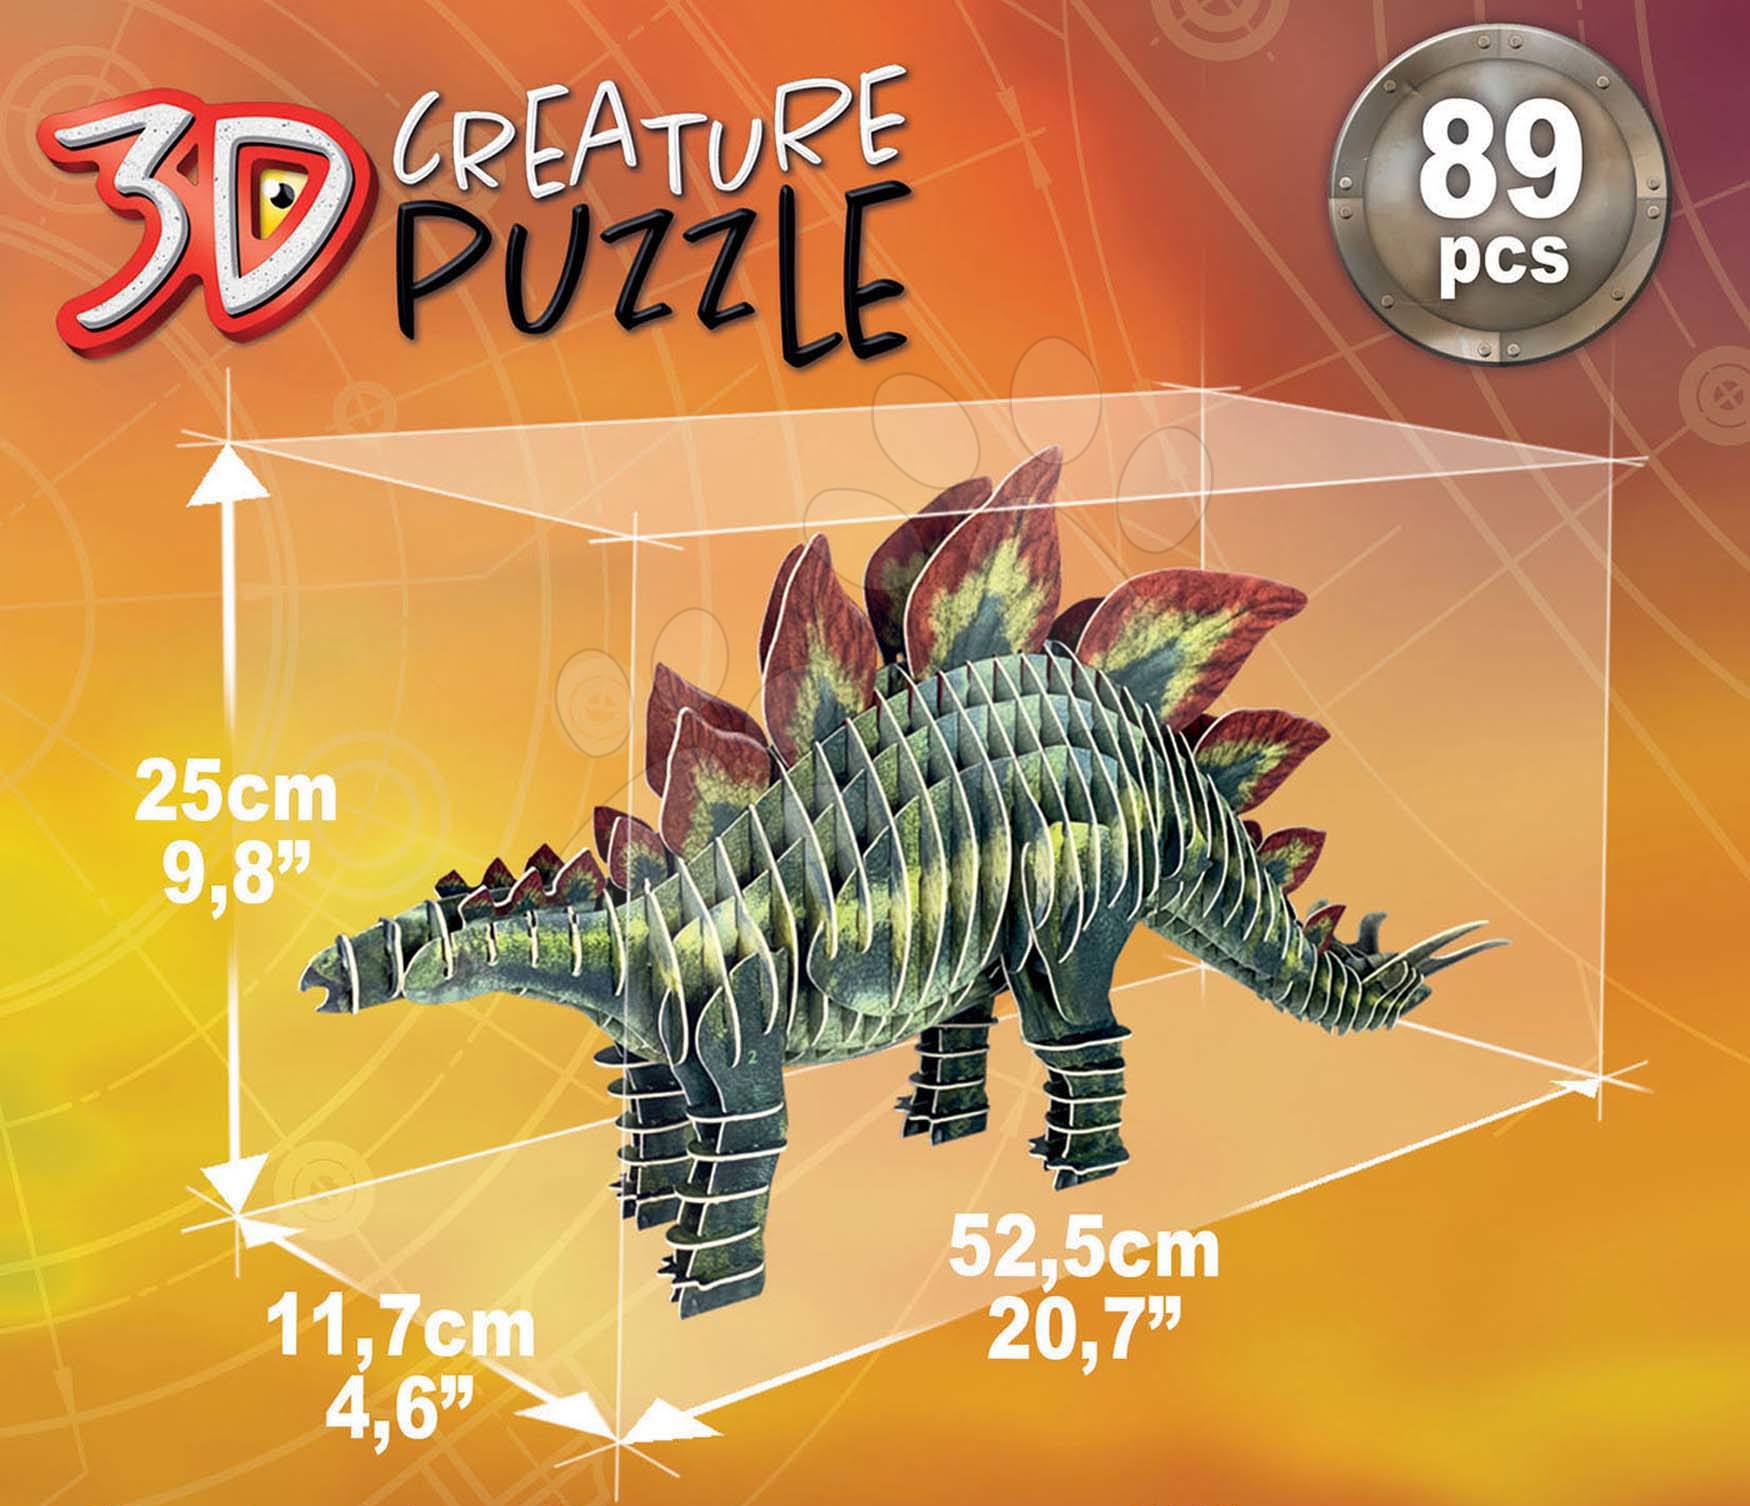 Brachiosaurus 3D Creature Puzzle - Educa Borras